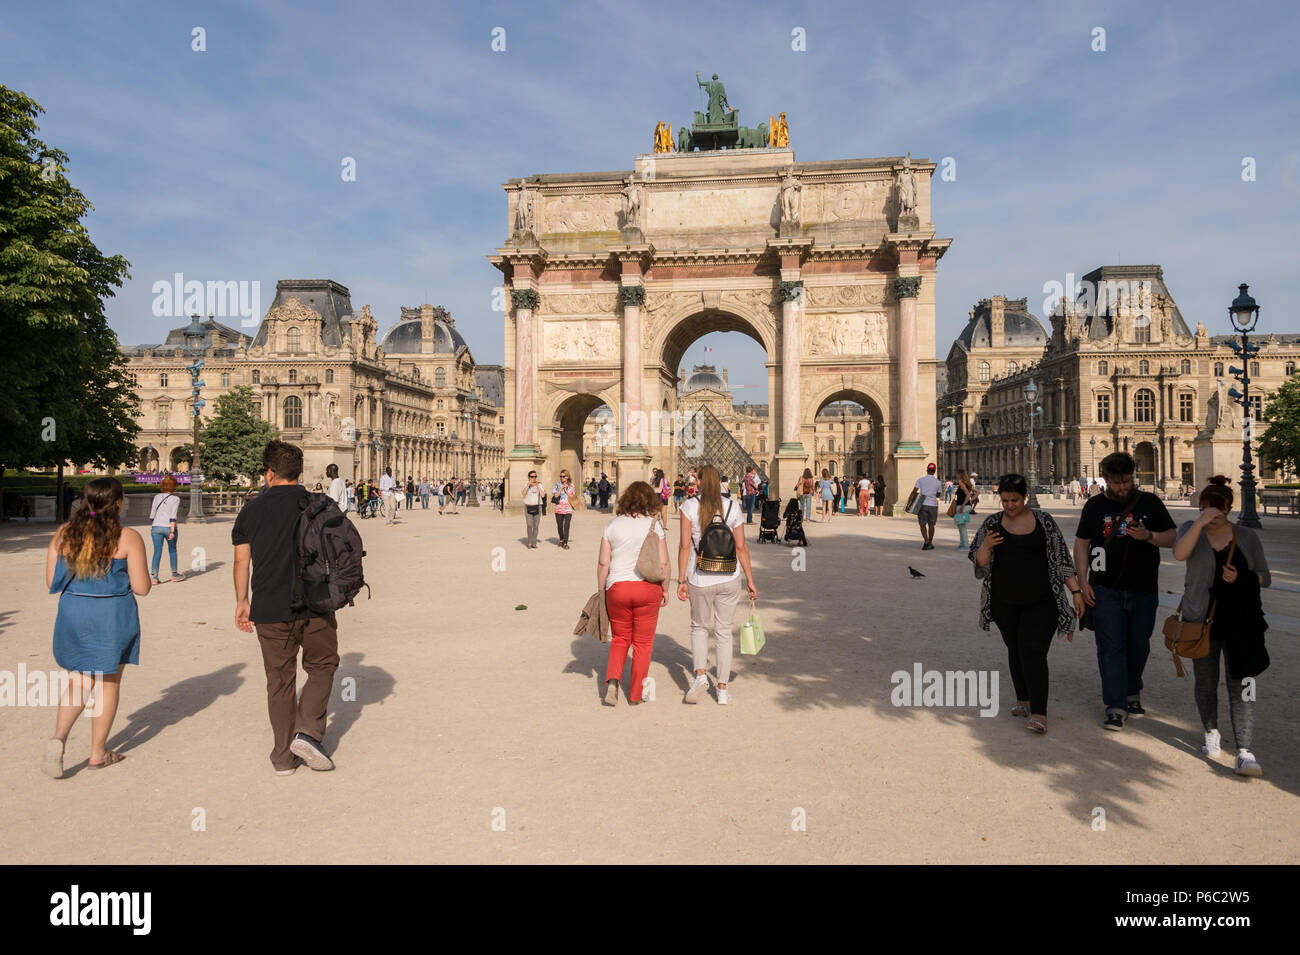 Paris, France - 24 juin 2018 : l'Arc de triomphe du Carrousel du Louvre, Pyramide et Banque D'Images